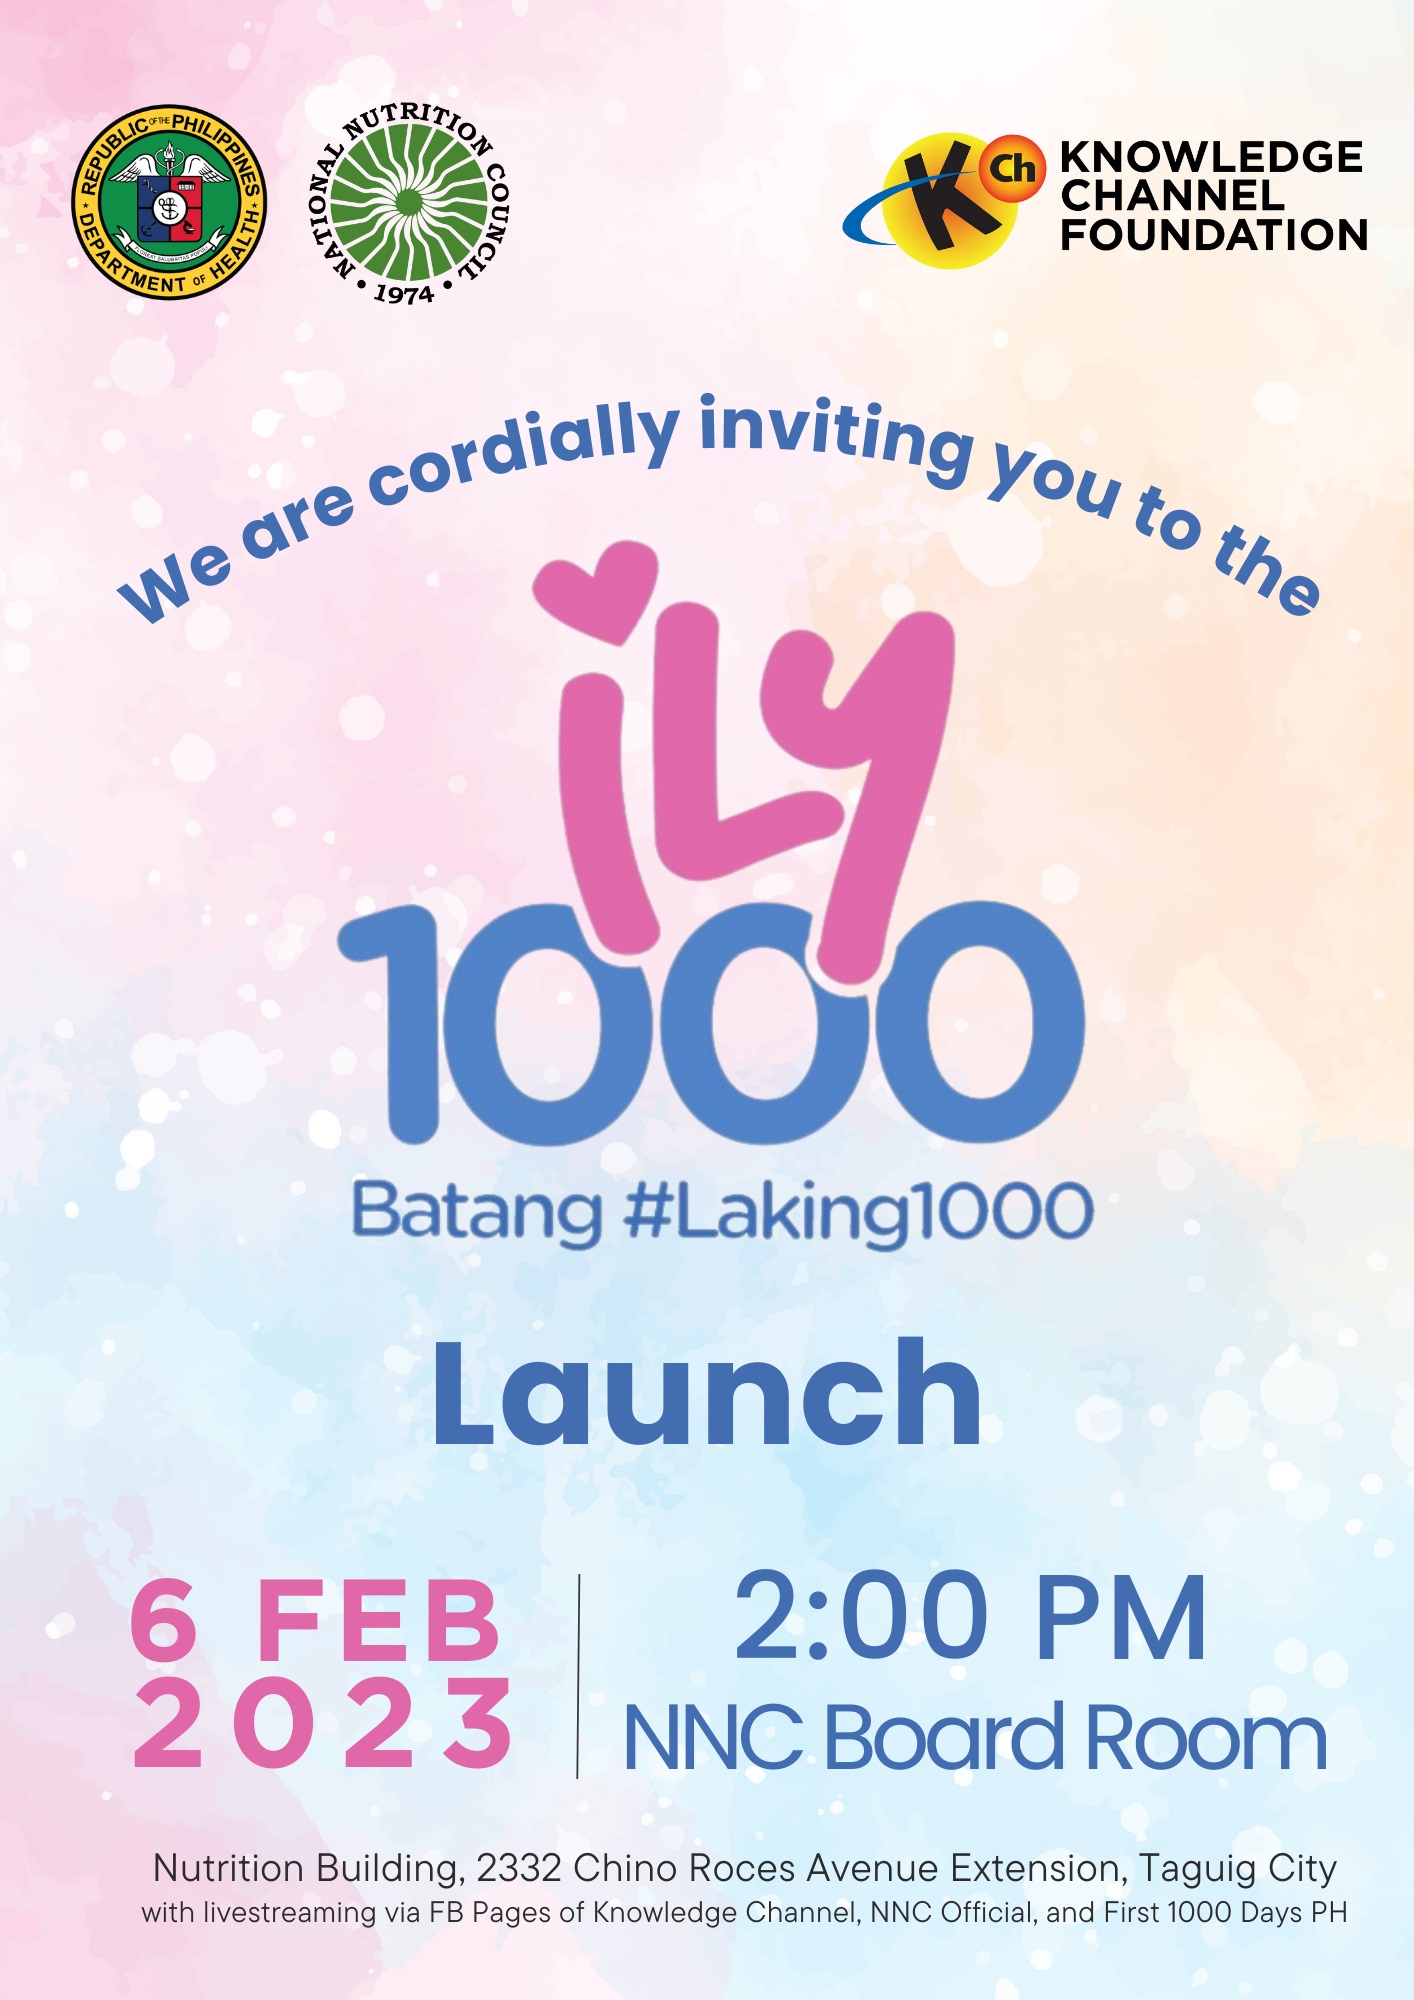 ILY1000: Batang #Laking1000